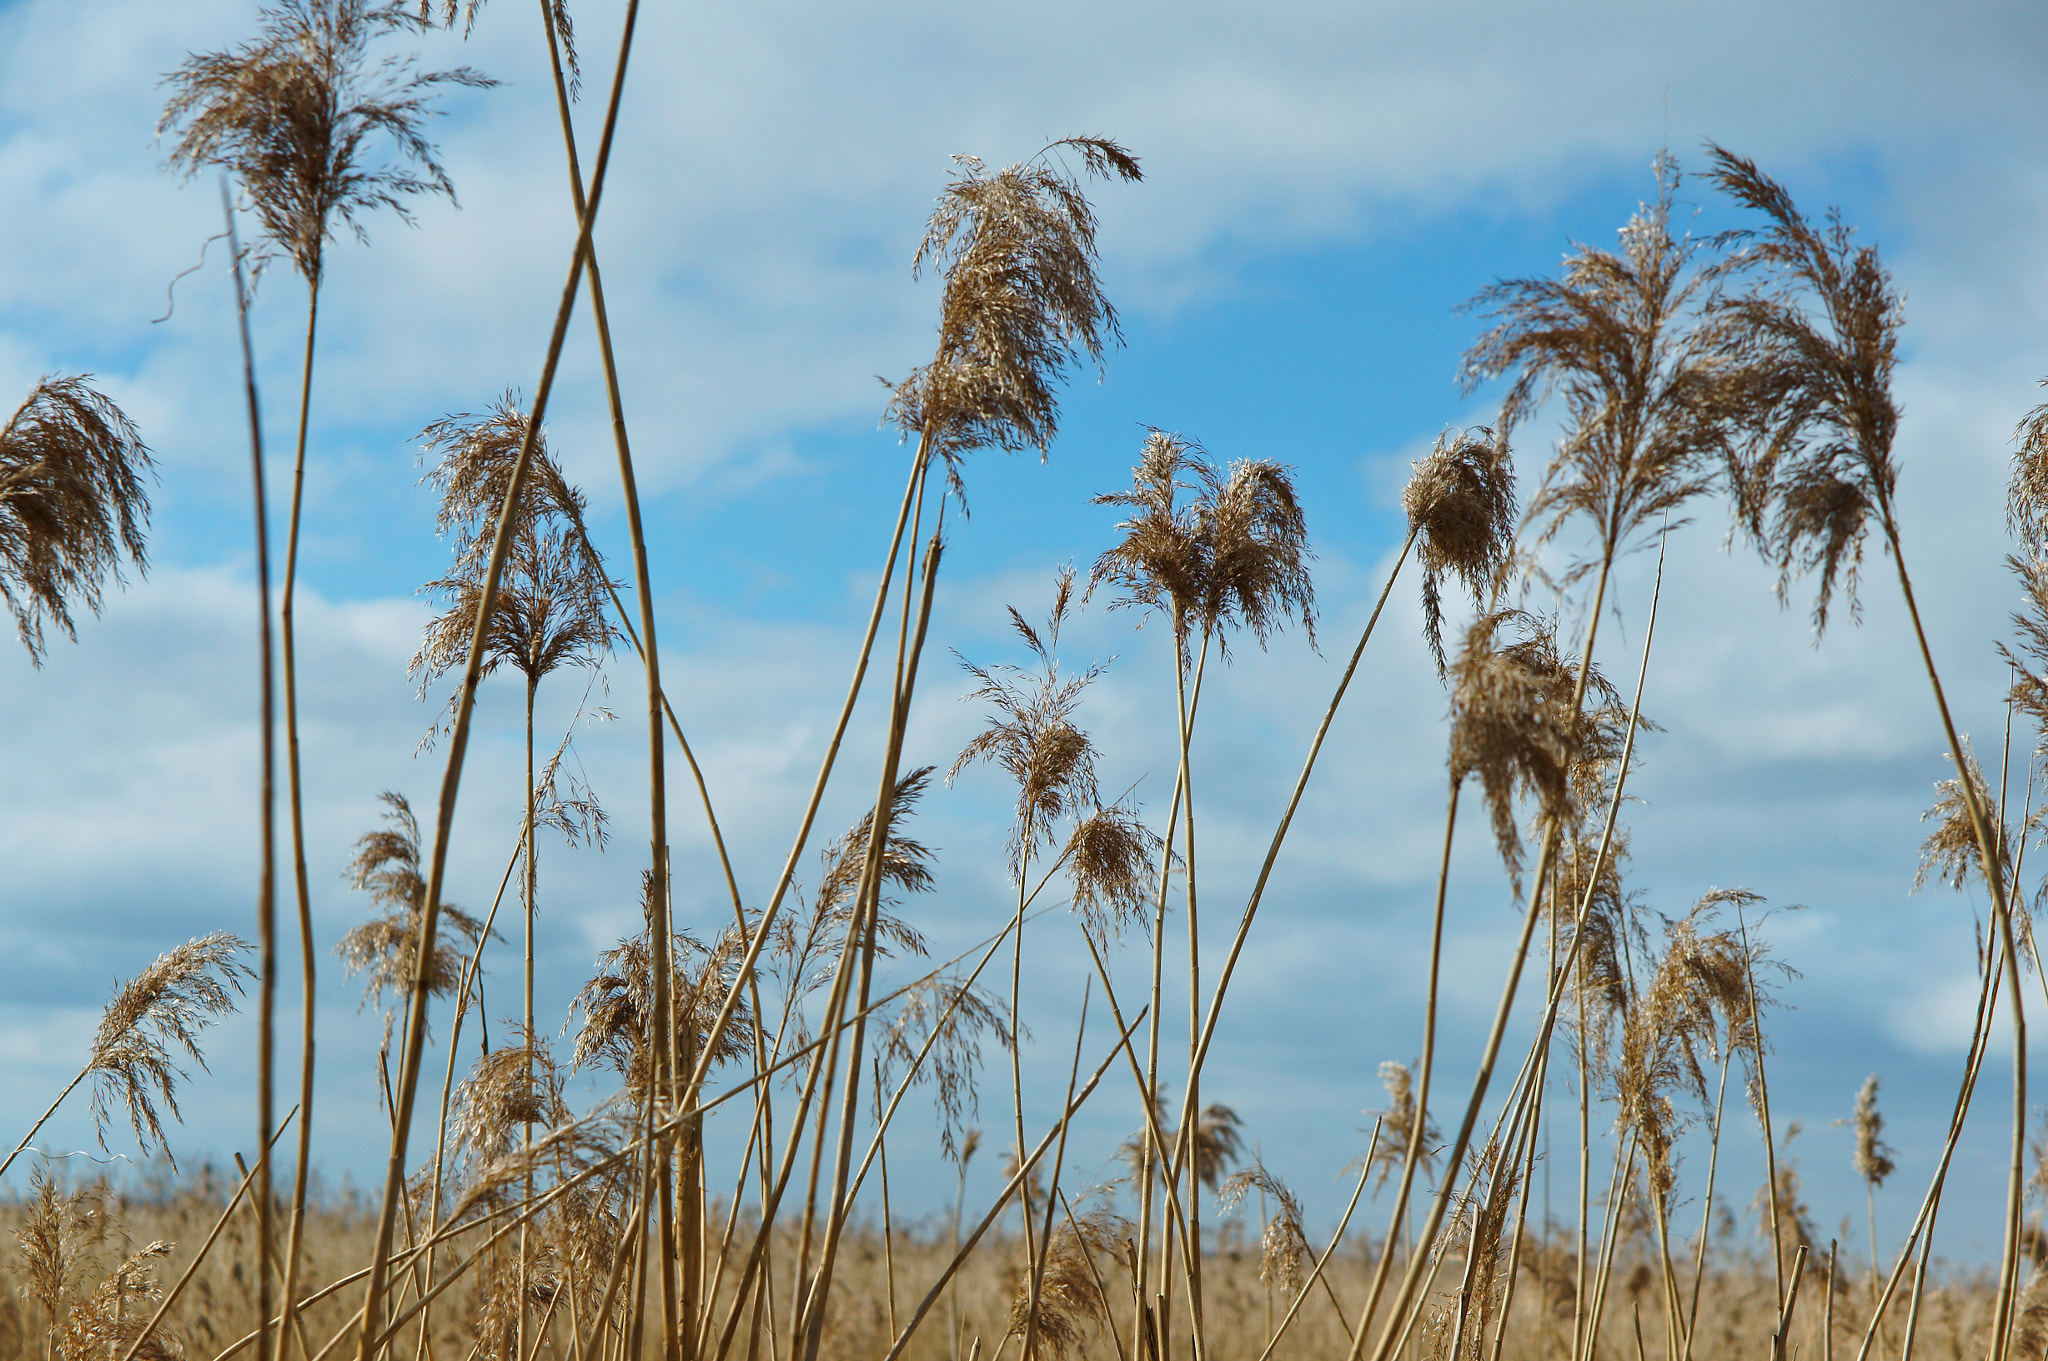 Sony Alpha NEX-3N sample photo. Grass, dry, dead wood, blue, sky, spring, sun photography